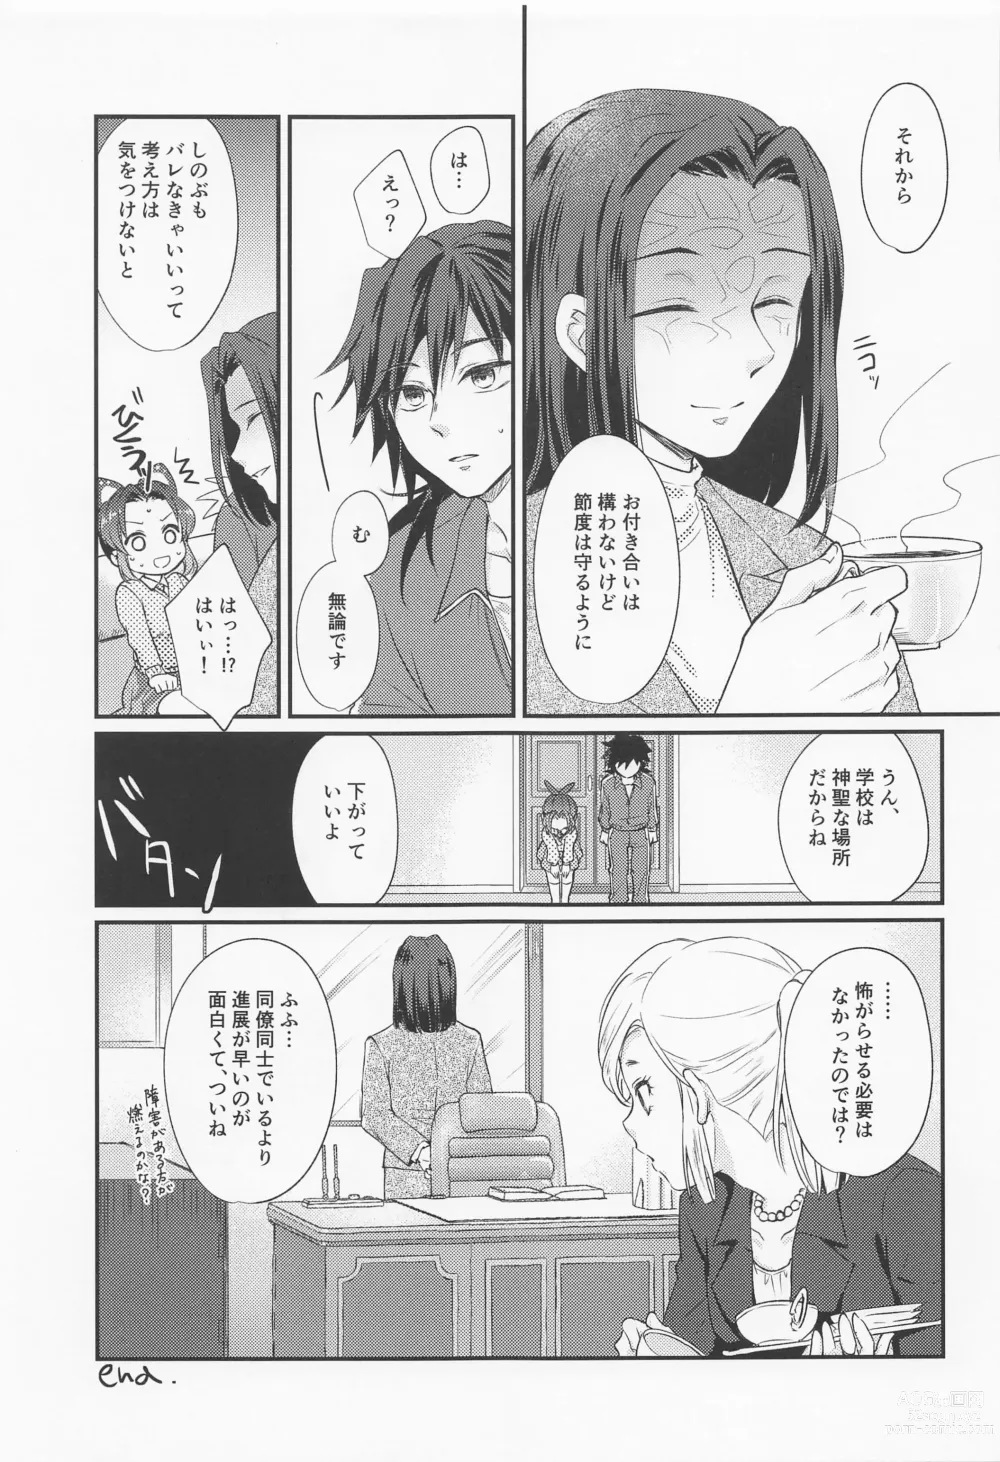 Page 34 of doujinshi Amakara Oxymoron